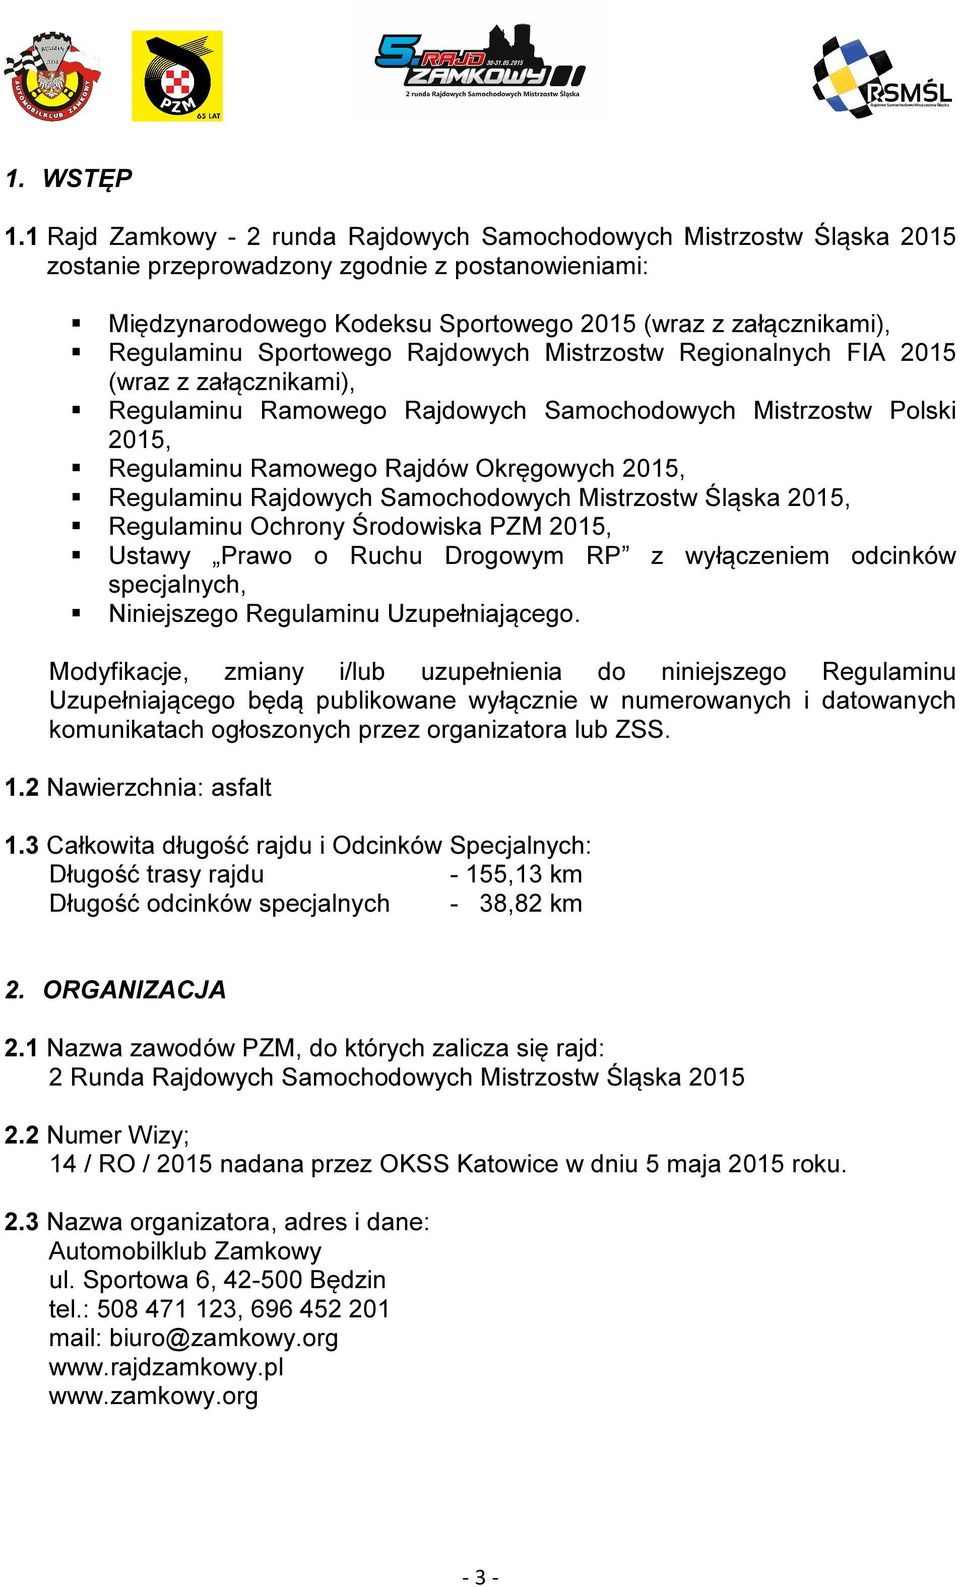 Sportowego Rajdowych Mistrzostw Regionalnych FIA 2015 (wraz z załącznikami), Regulaminu Ramowego Rajdowych Samochodowych Mistrzostw Polski 2015, Regulaminu Ramowego Rajdów Okręgowych 2015, Regulaminu